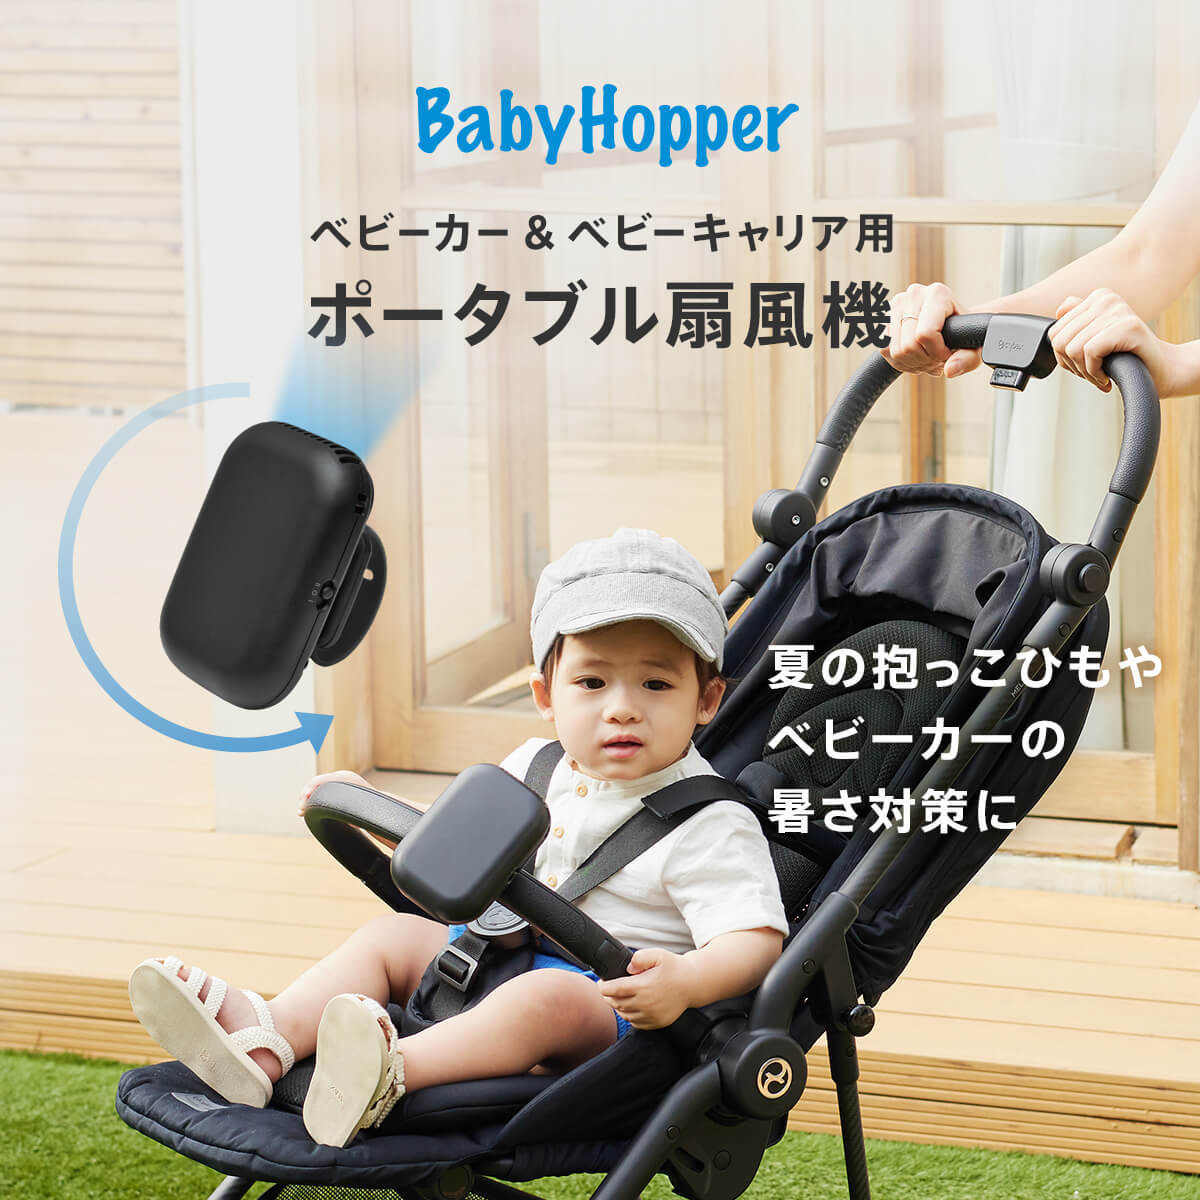 【 クーポン 】 扇風機 ポータブル ベビーカー 抱っこ紐 暑さ対策 猛暑対策 BabyHopper ベビーホッパー